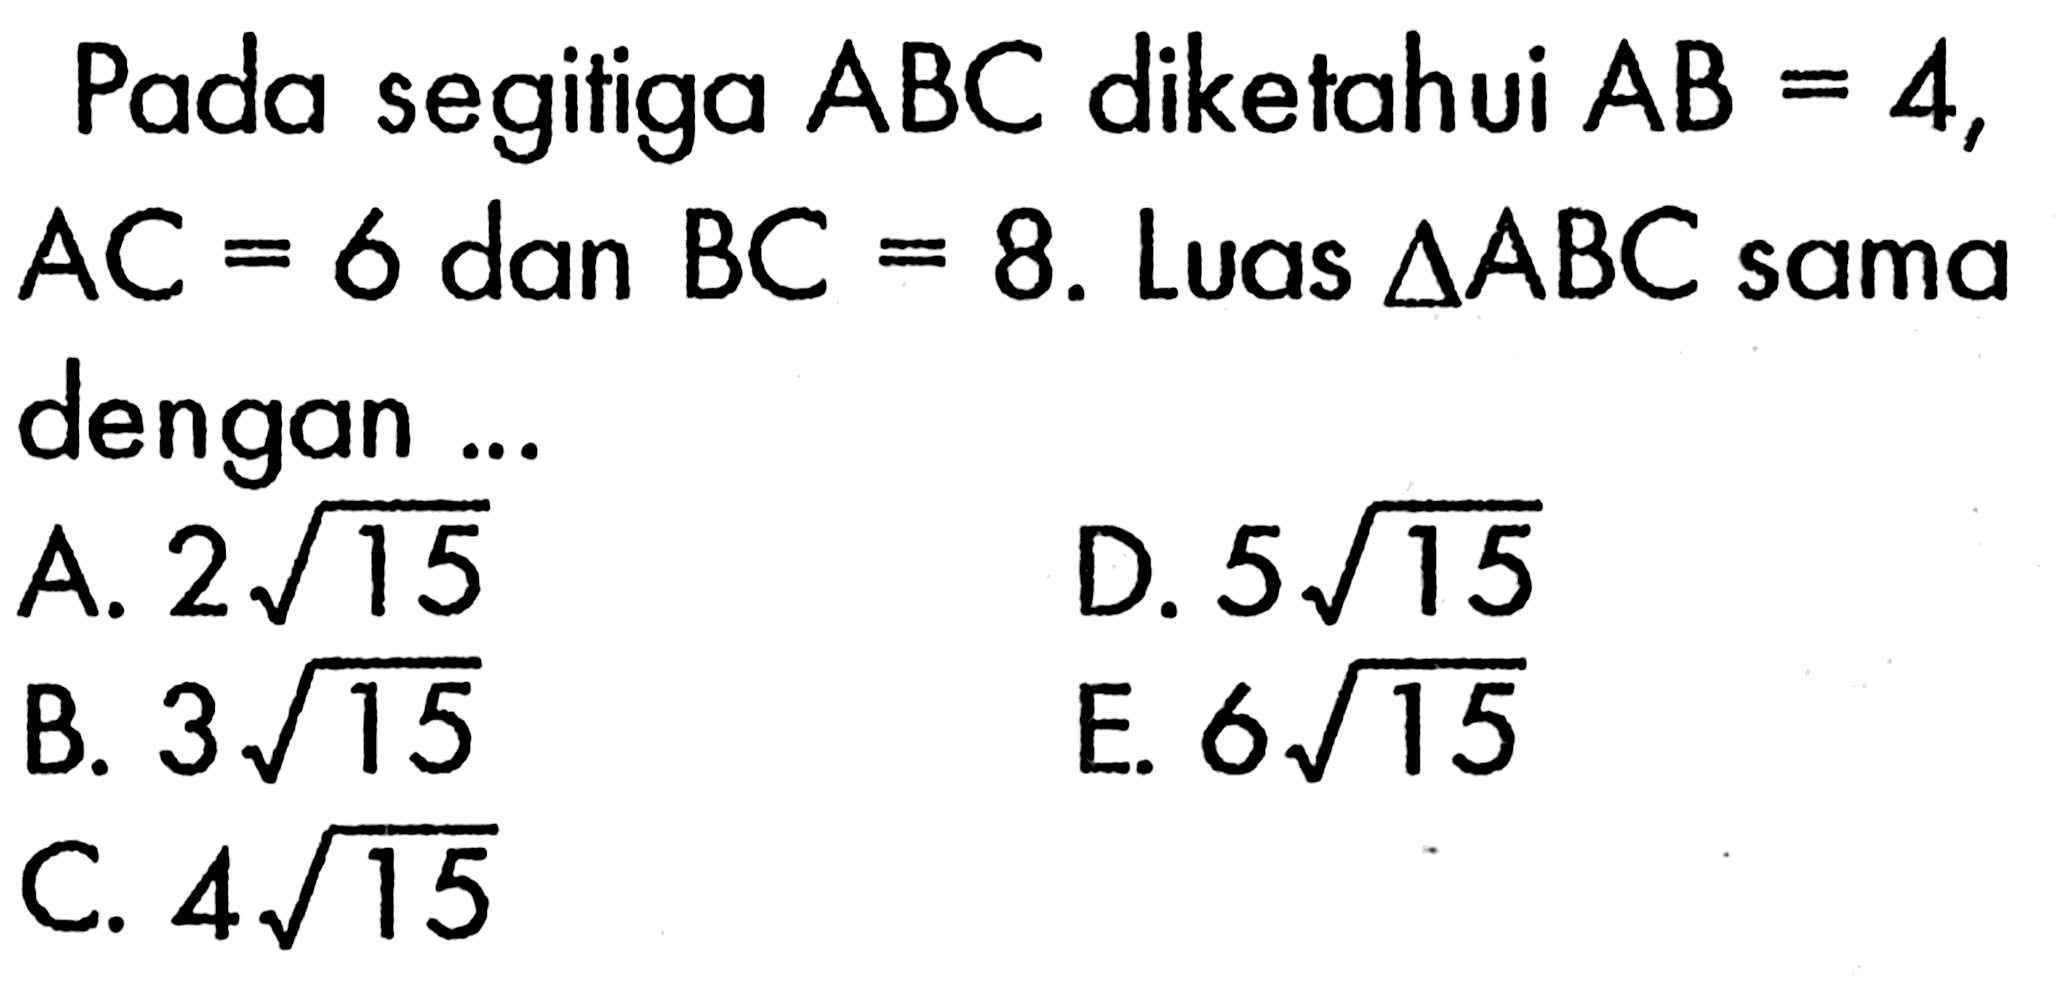 Pada segitiga  ABC  diketahui  AB=4 ,  AC=6  dan  BC=8 . Luas  segitiga ABC  sama dengan ...